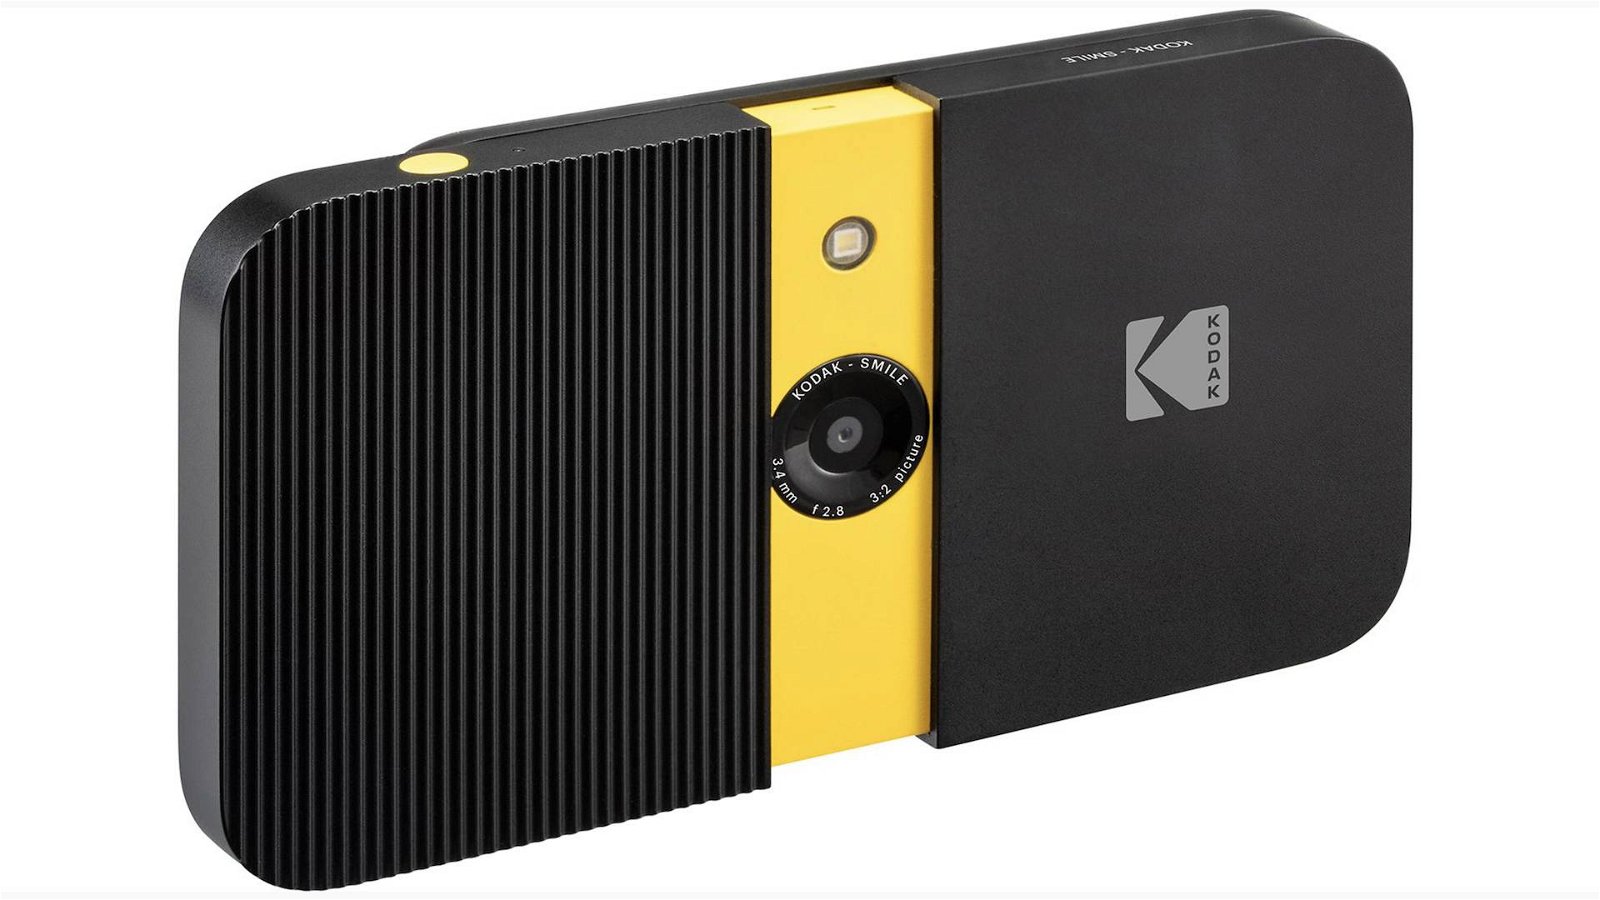 Immagine di Kodak Smile: tre prodotti per chi ama lo scatto digitale e la stampa istantanea